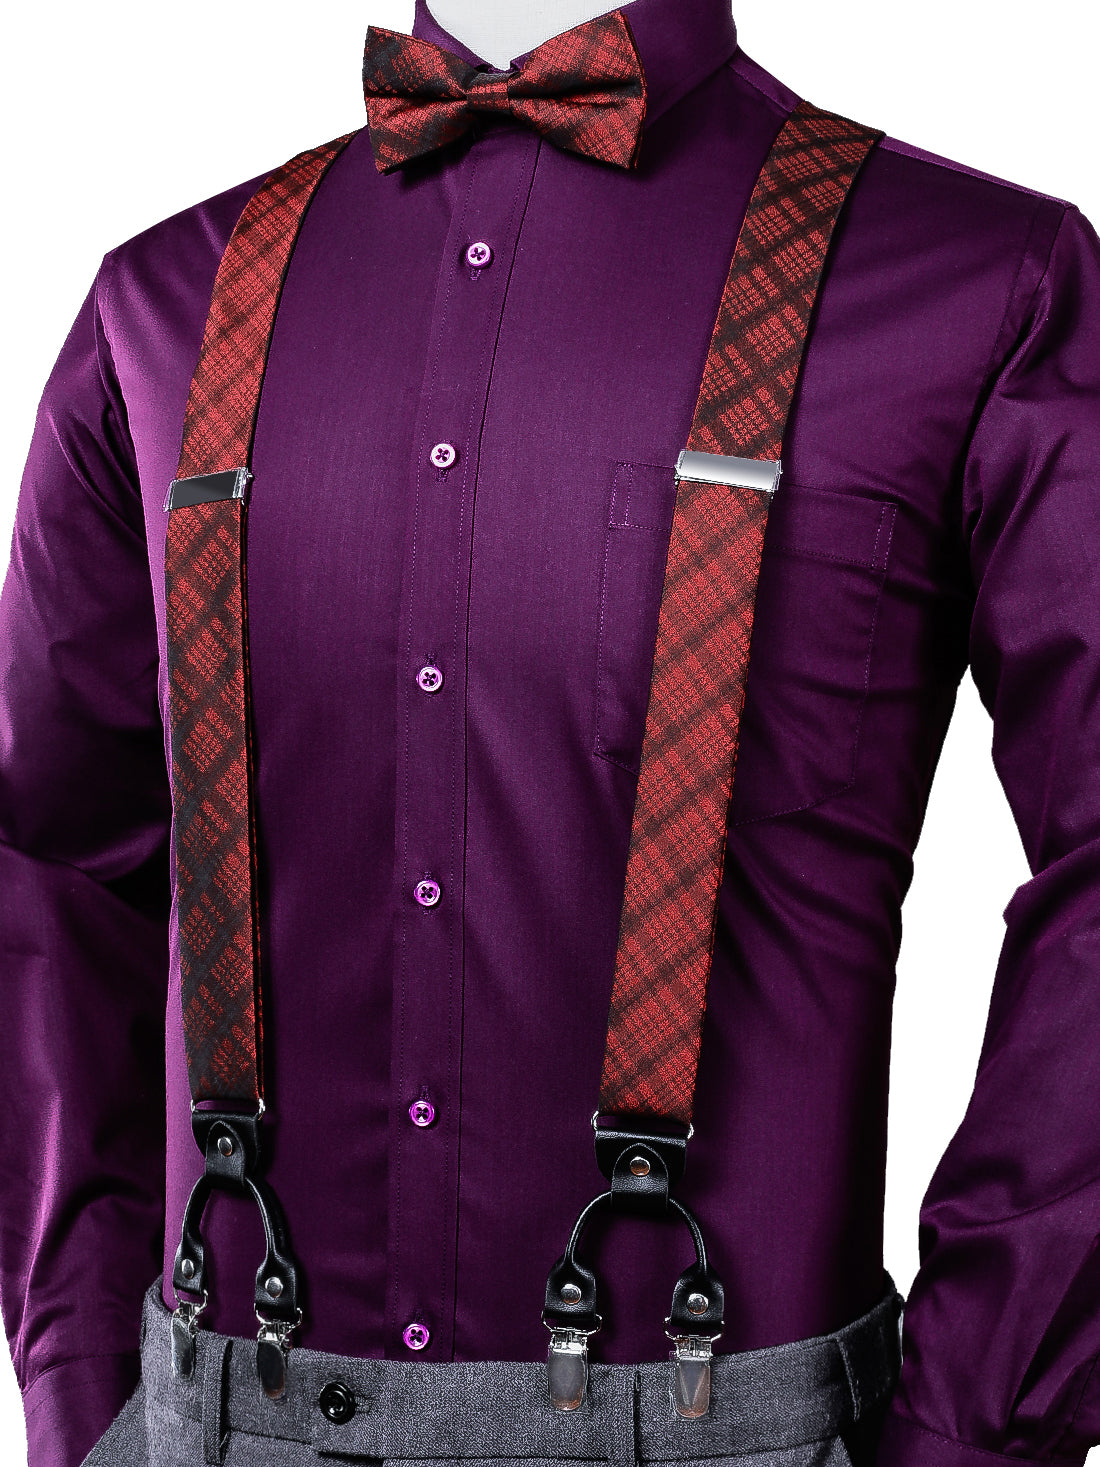 Dark Red Plaid Stripe Suspender Bowtie Handkerchief Cufflinks Set